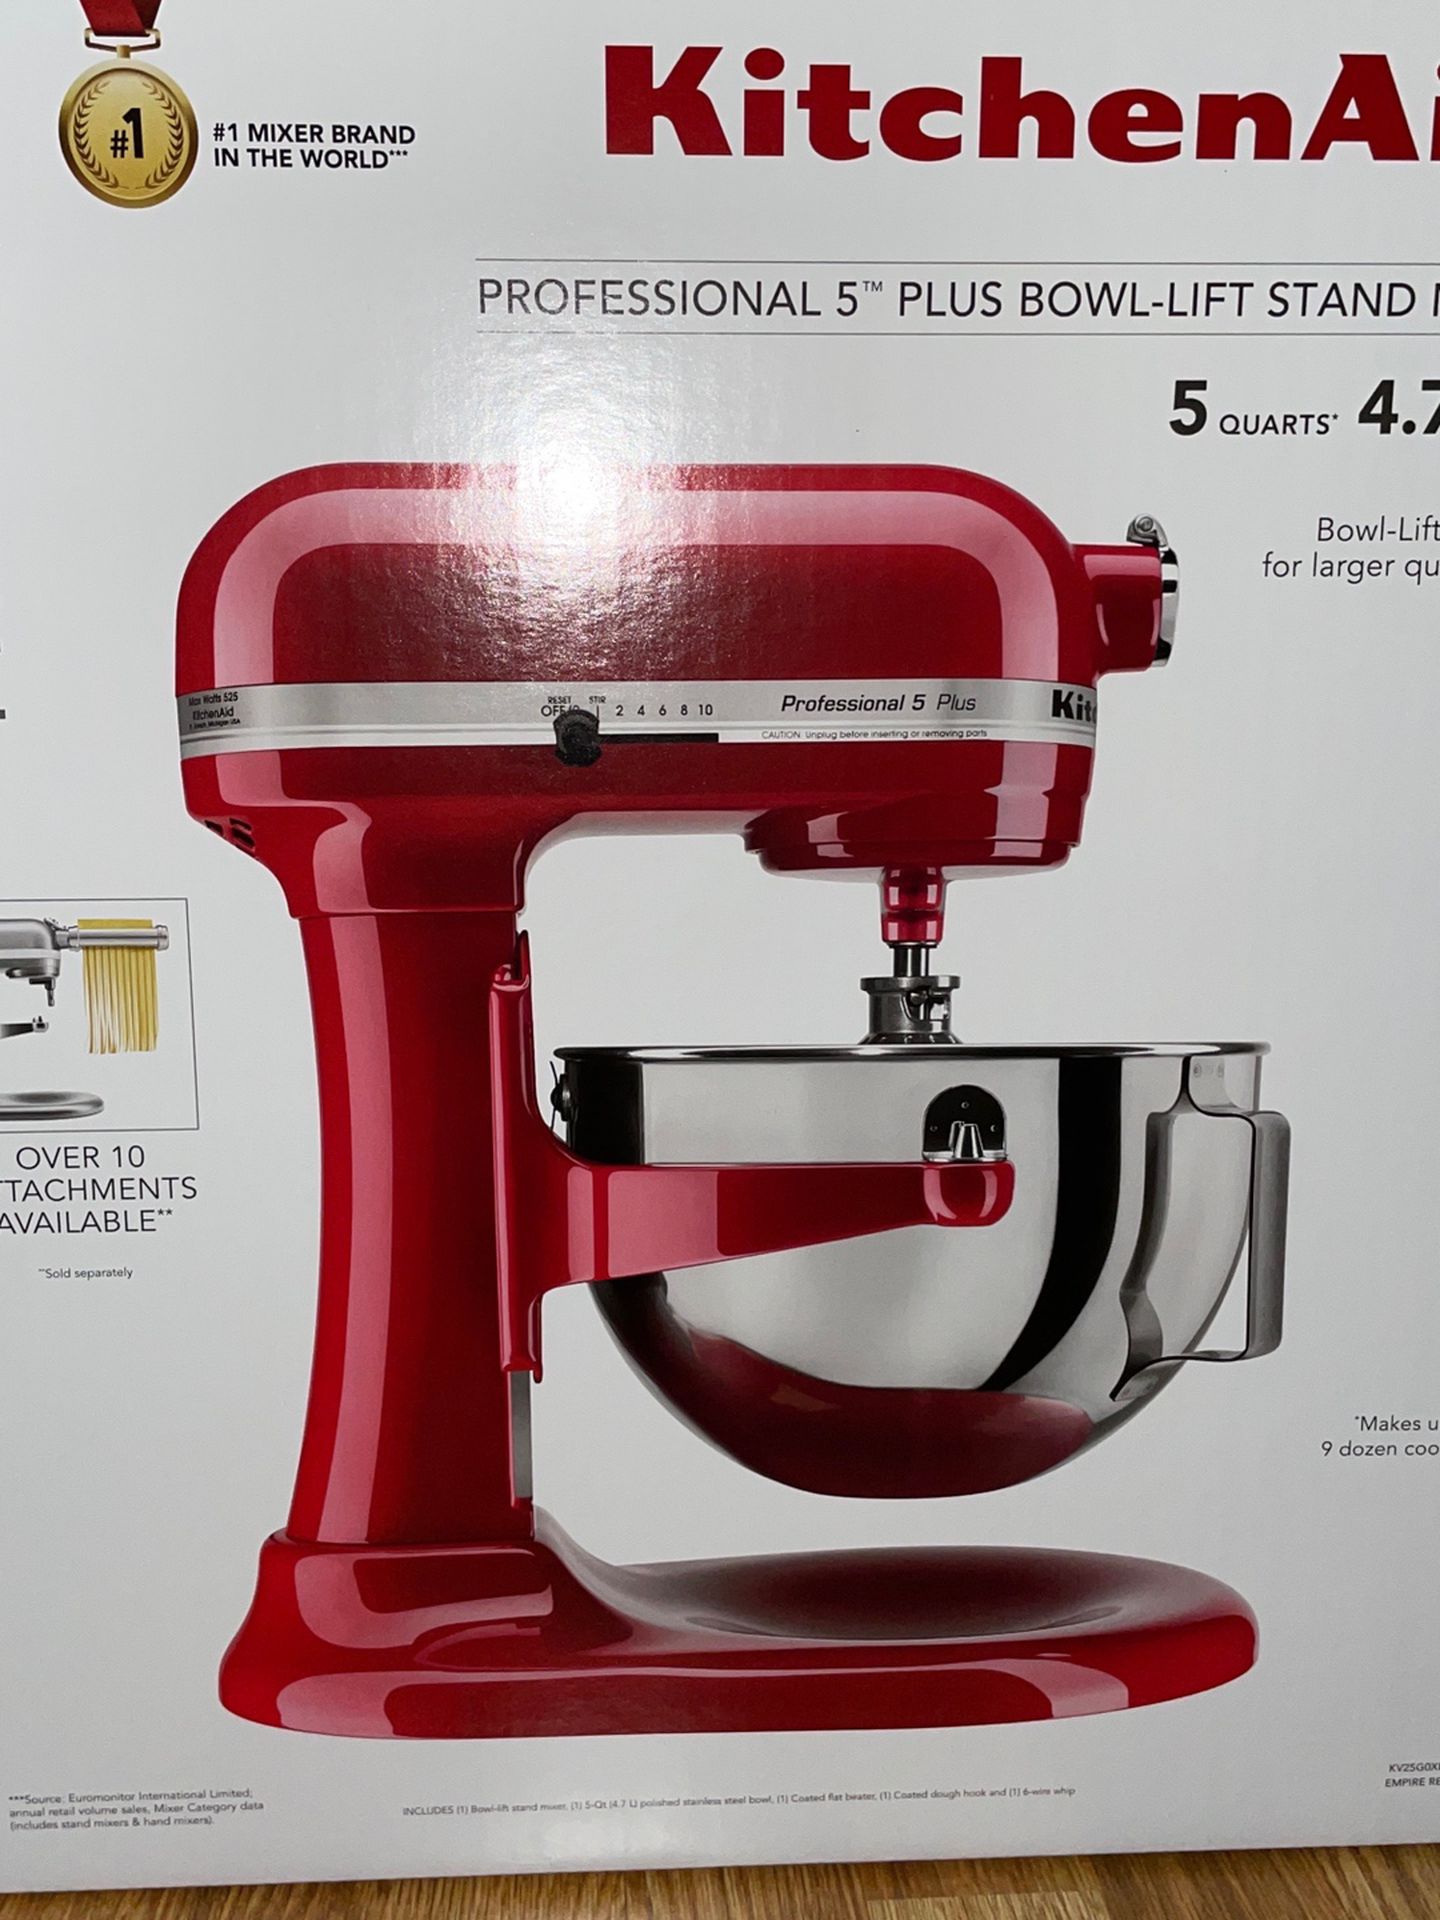 KitchenAid Pro 5 Plus KV25G0X Empire Red 5-Quart Bowl-Lift Stand Mixer